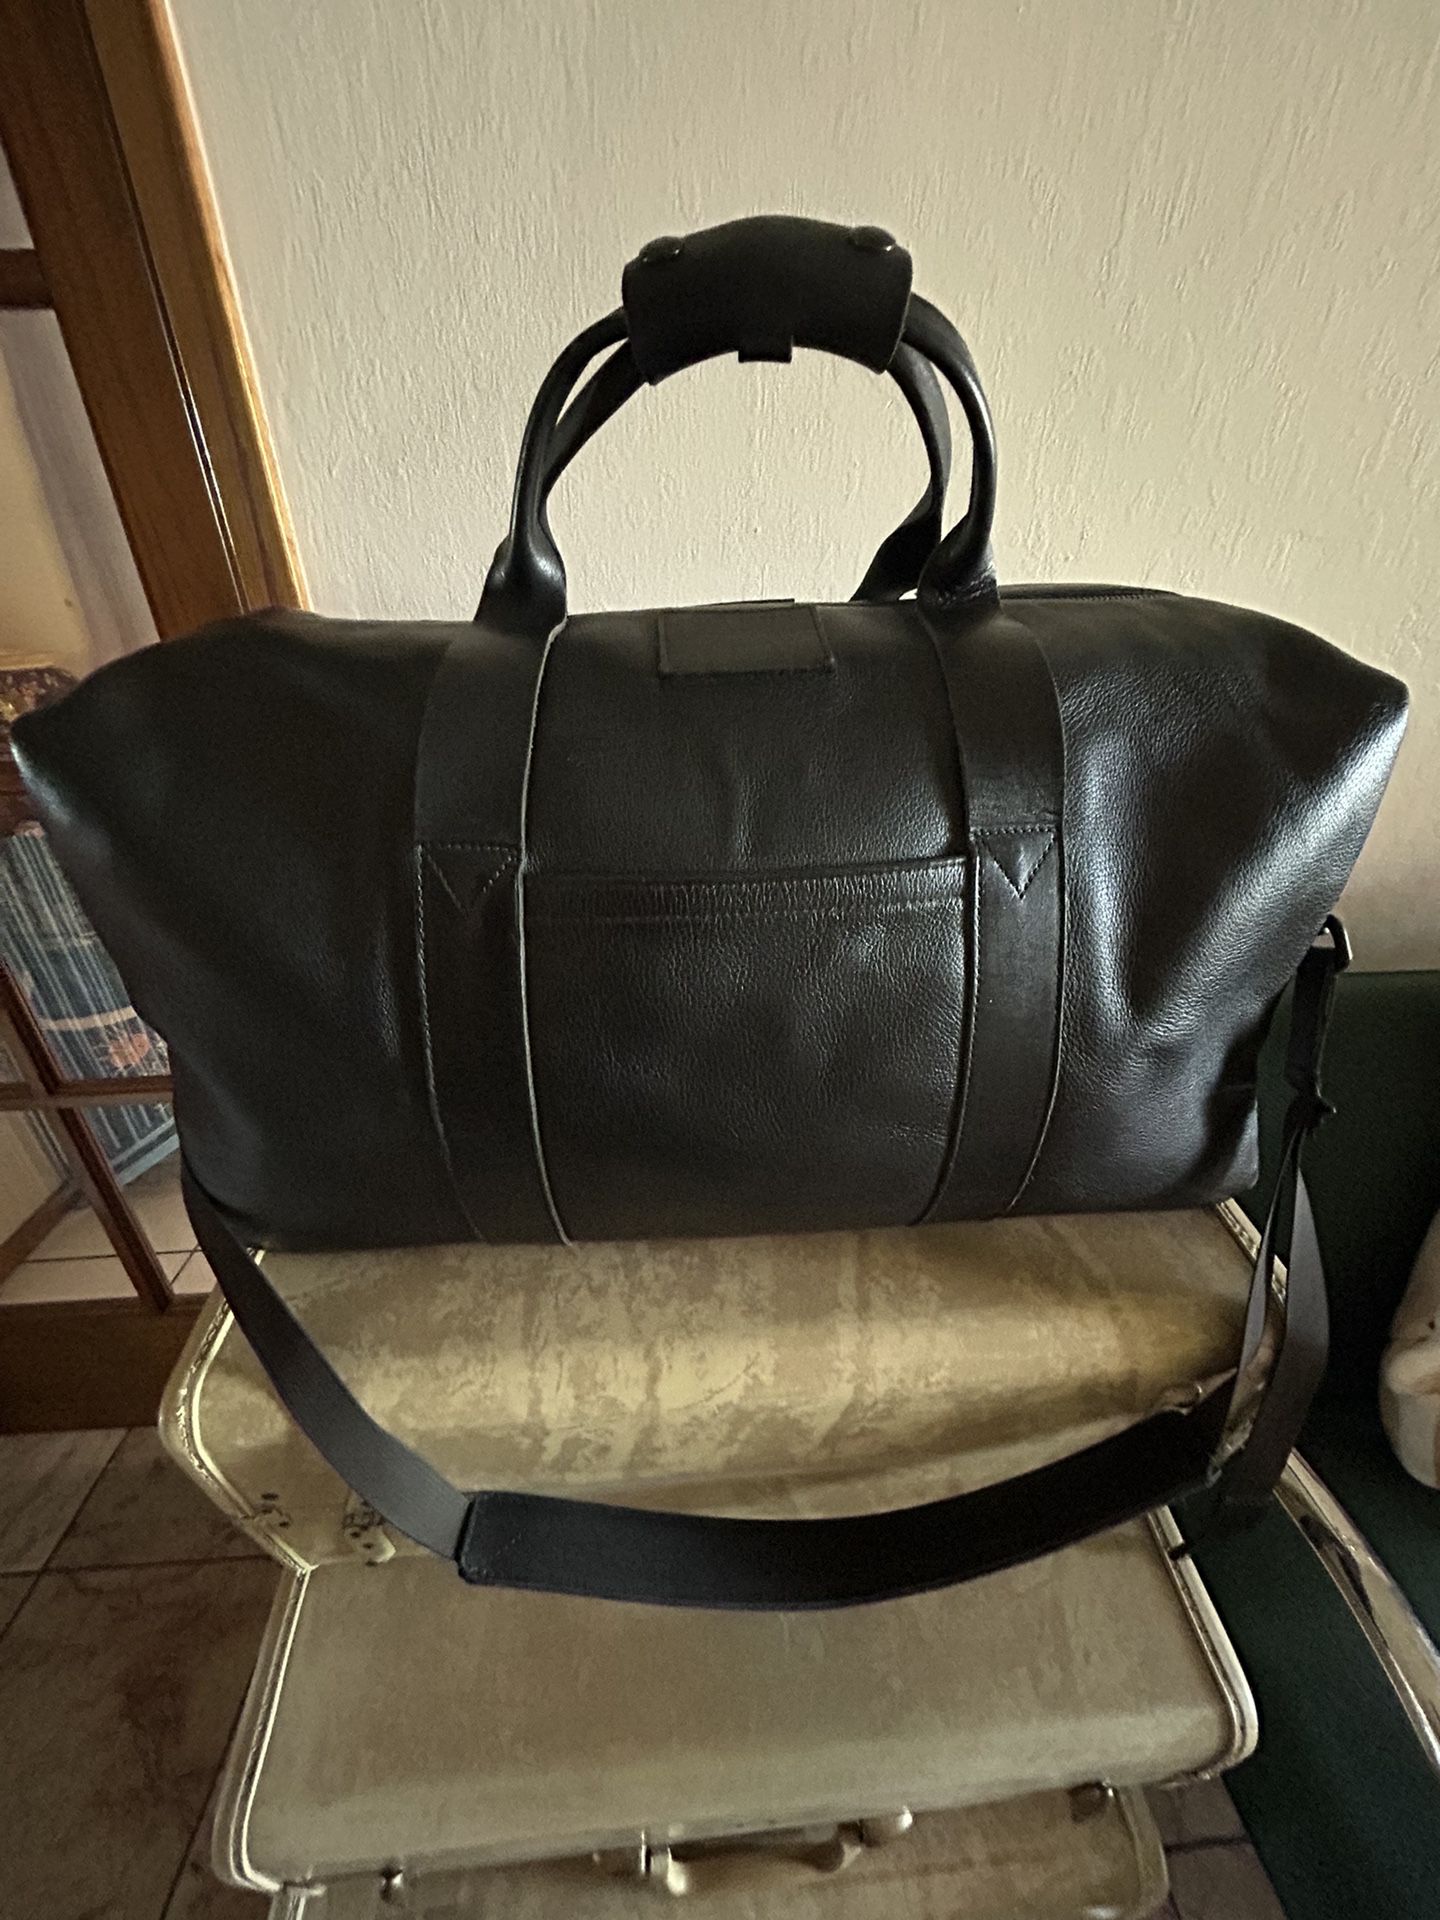 KILLSPENCER Duffle Bag, Pre-owned.( Retail for $725.00)